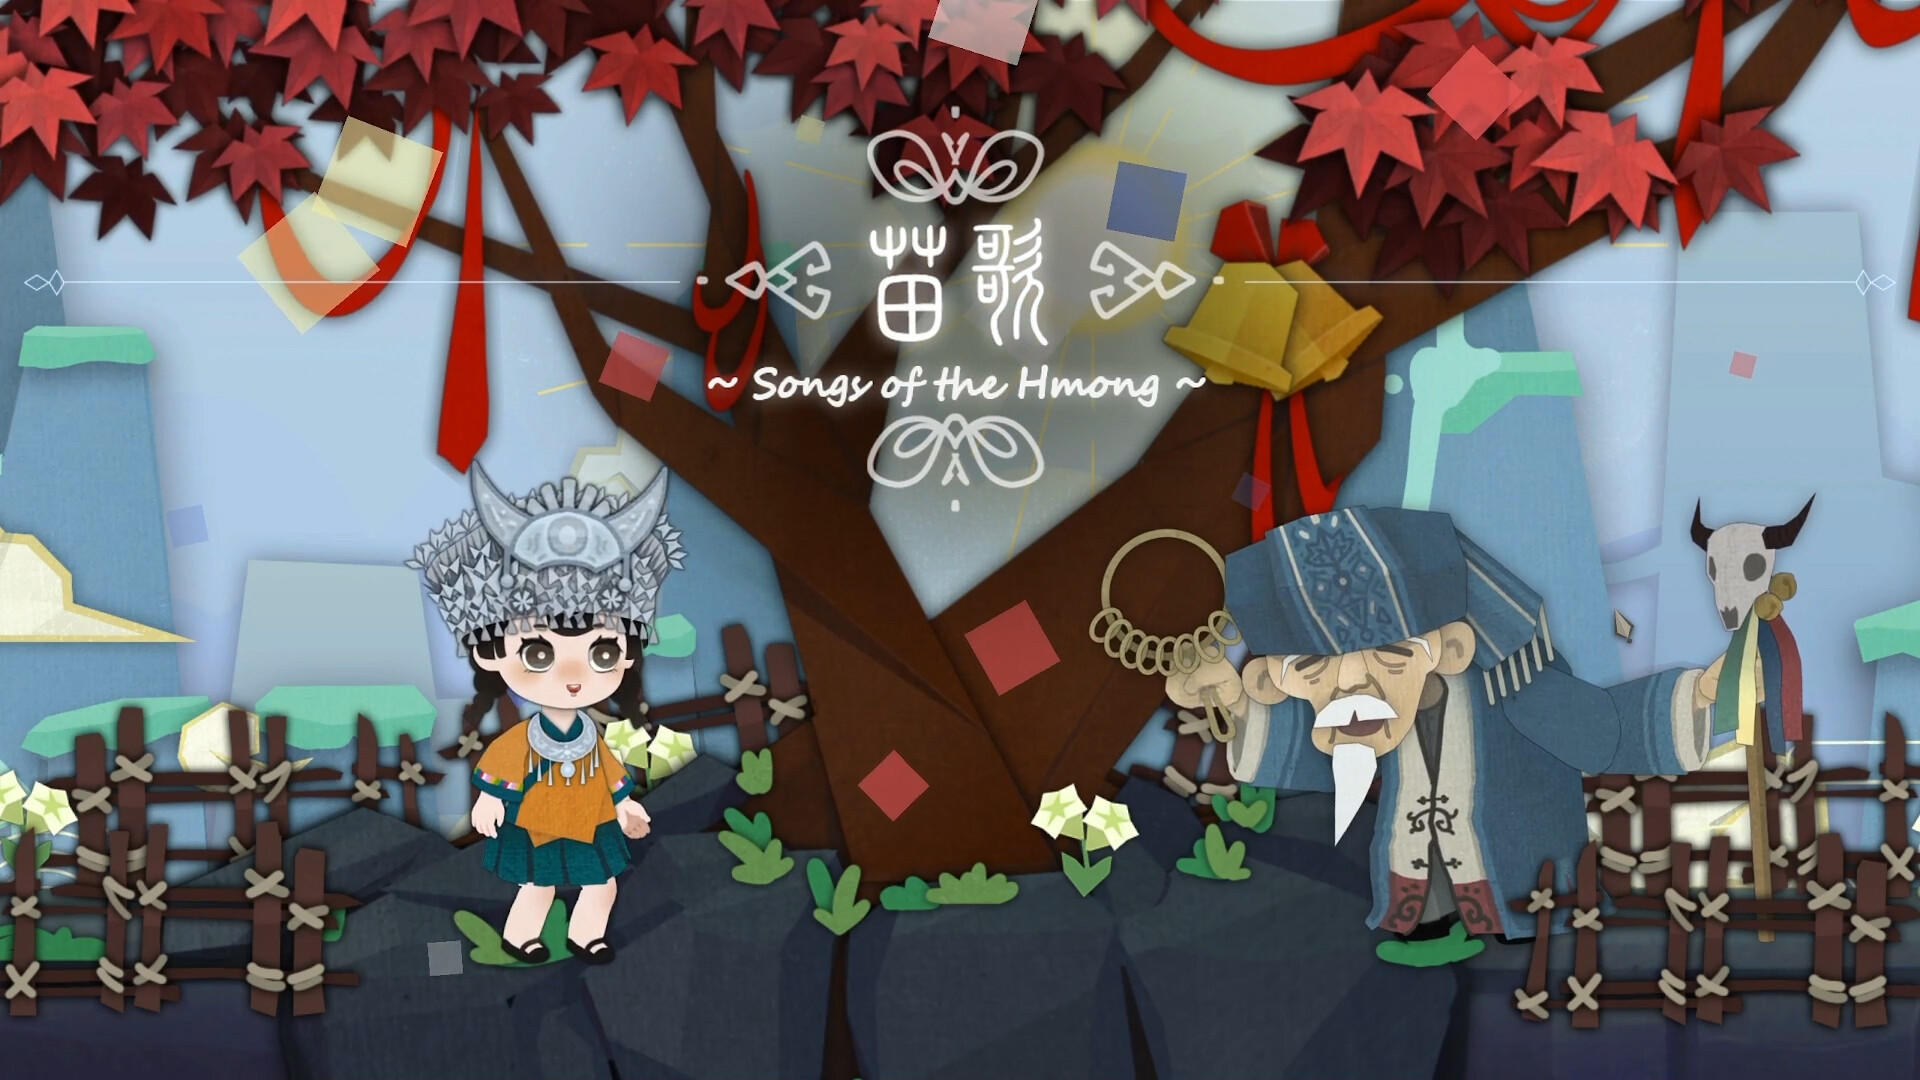 Screenshot 1 of Lagu-lagu HMong 